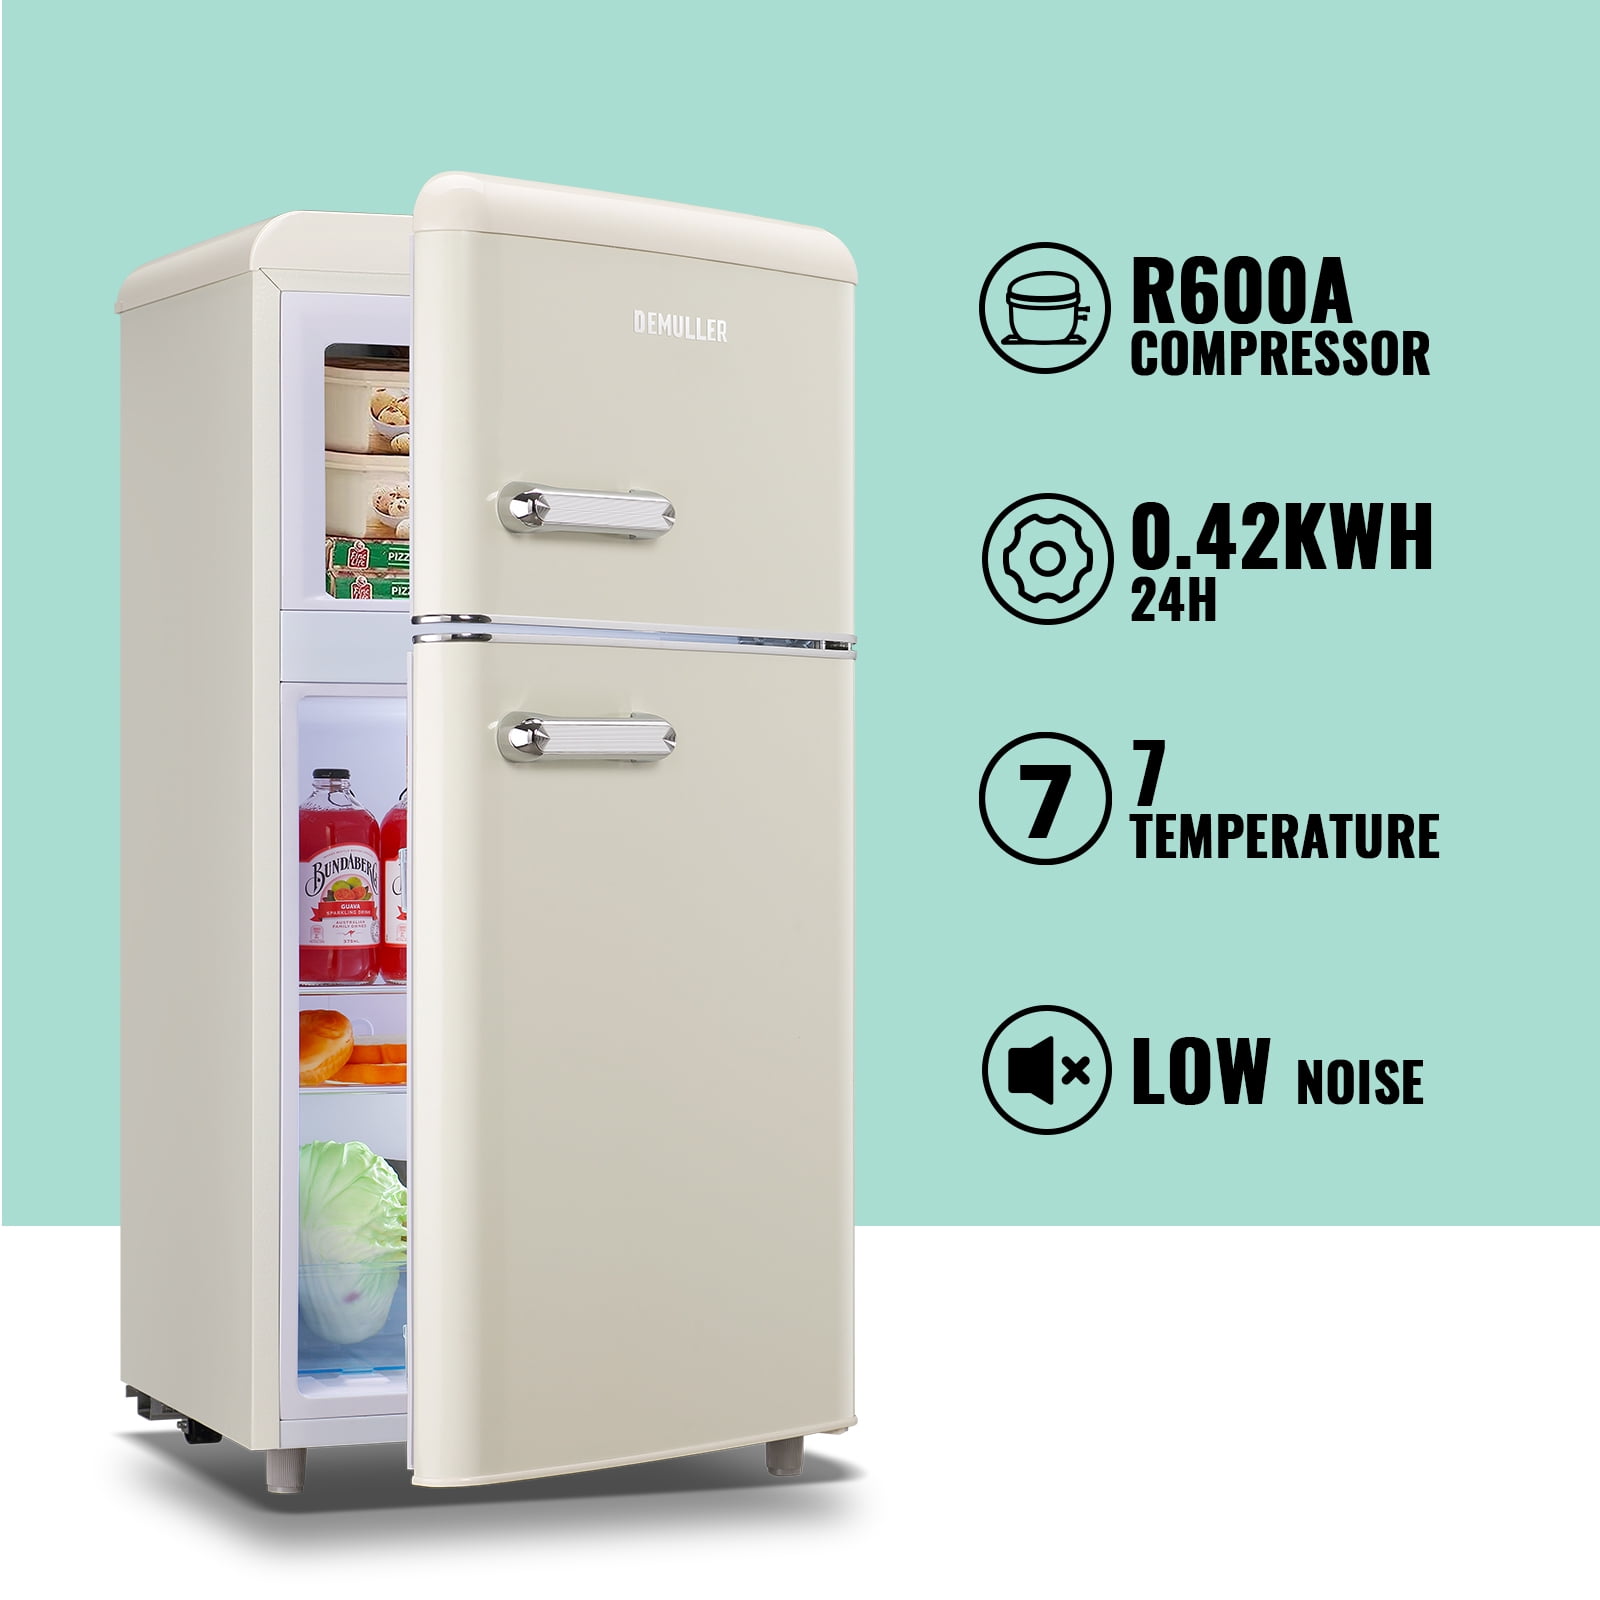 DEMULLER Mini Refrigerator Dual Door Fridge with Handle 7 speed temperature control YX-100-BLACK